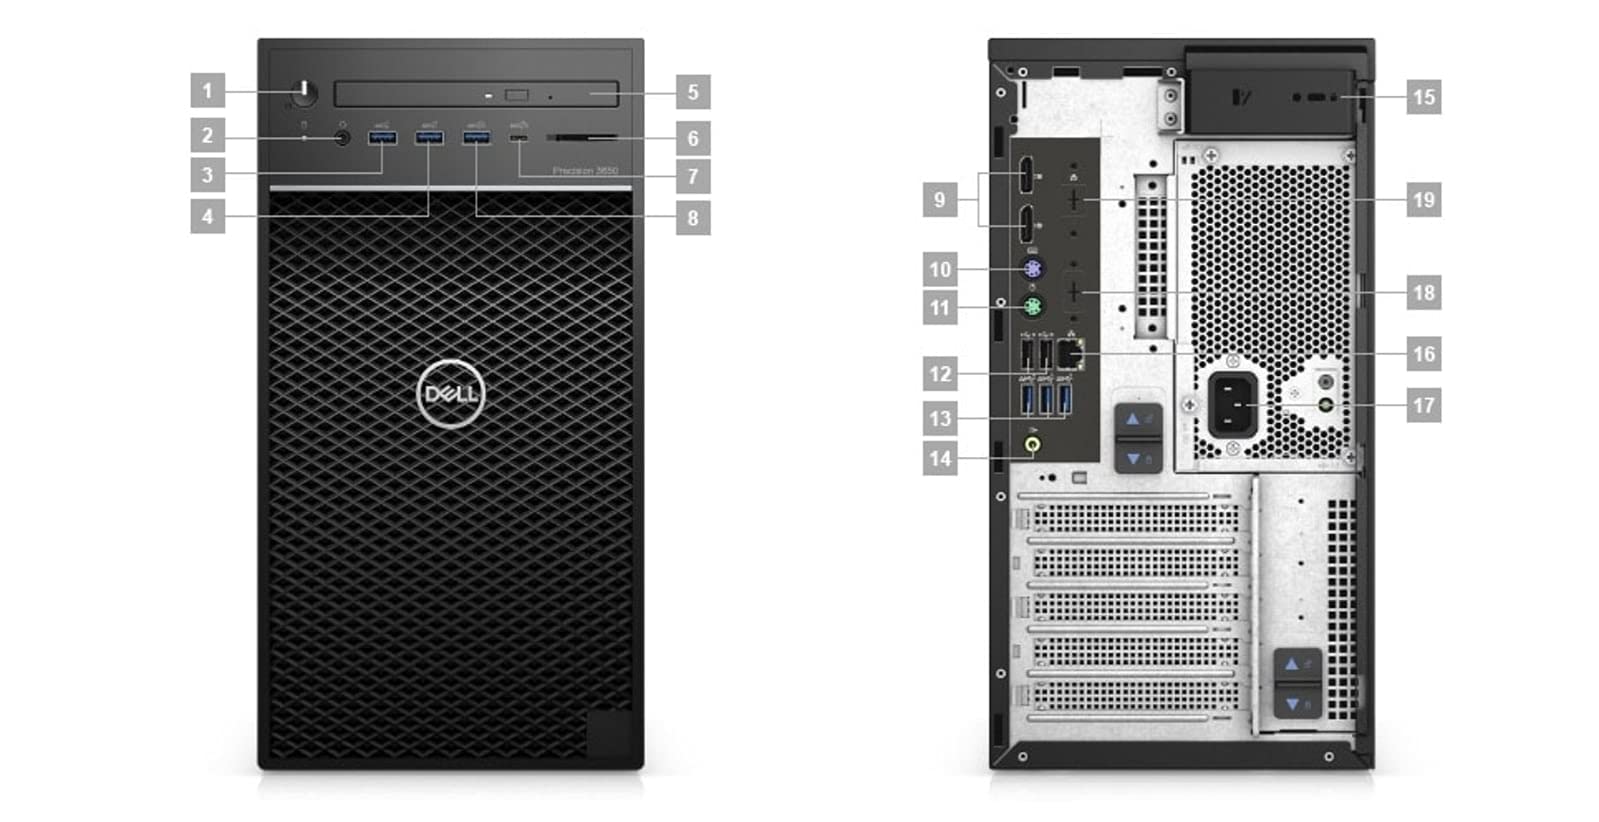 Dell Precision T3650 Workstation Desktop (2021) | Core i7-512GB SSD - 64GB RAM - Quadro P2000 | 8 Cores @ 4.8 GHz - 10th Gen CPU - 5GB GDDR5 Win 11 Pro (Renewed)